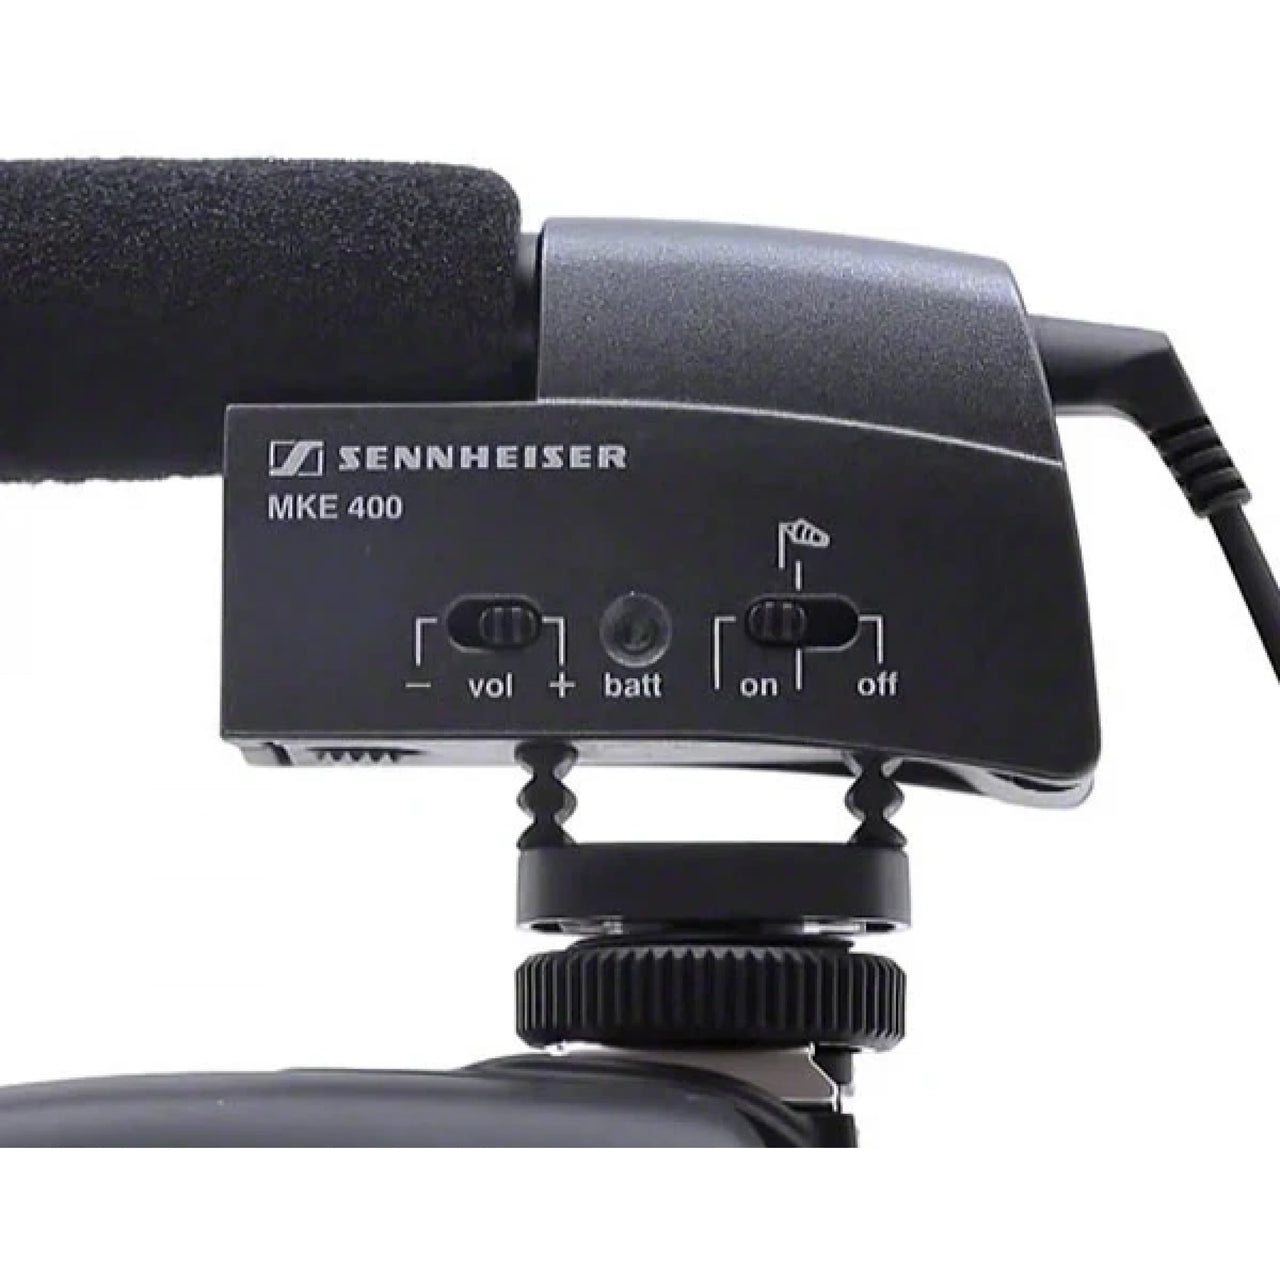 Microfono Sennheiser Direccional Tipo Cañon P/Video Camara, Mke400